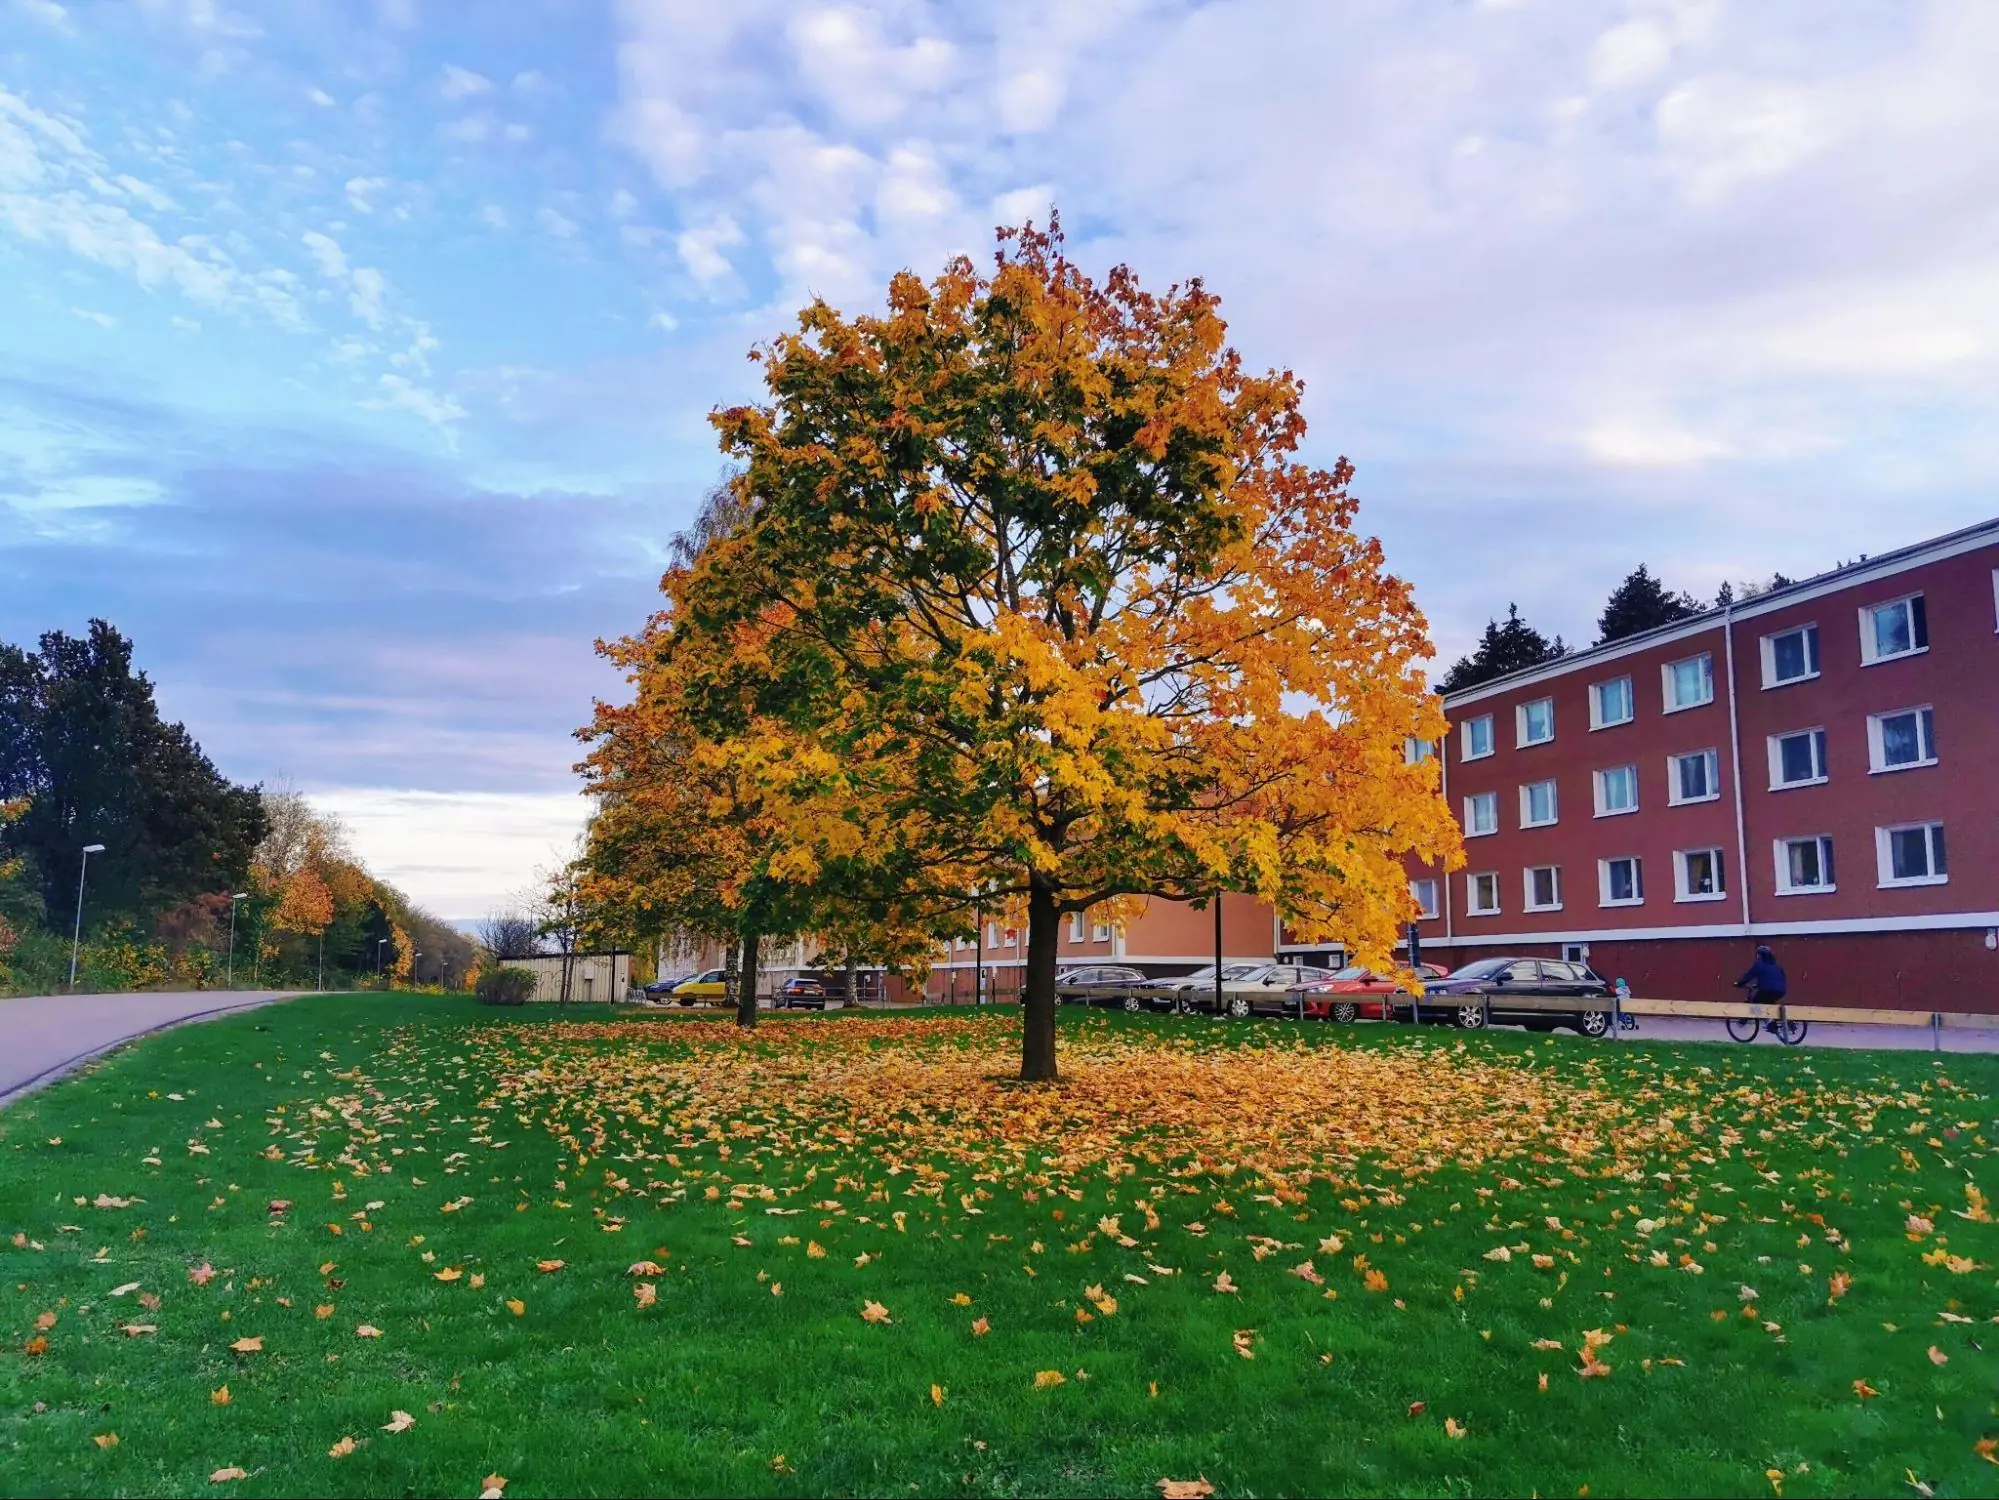 【スウェーデンの暮らし】冬はもうすぐそこまで、スウェーデンの紅葉美しい10月